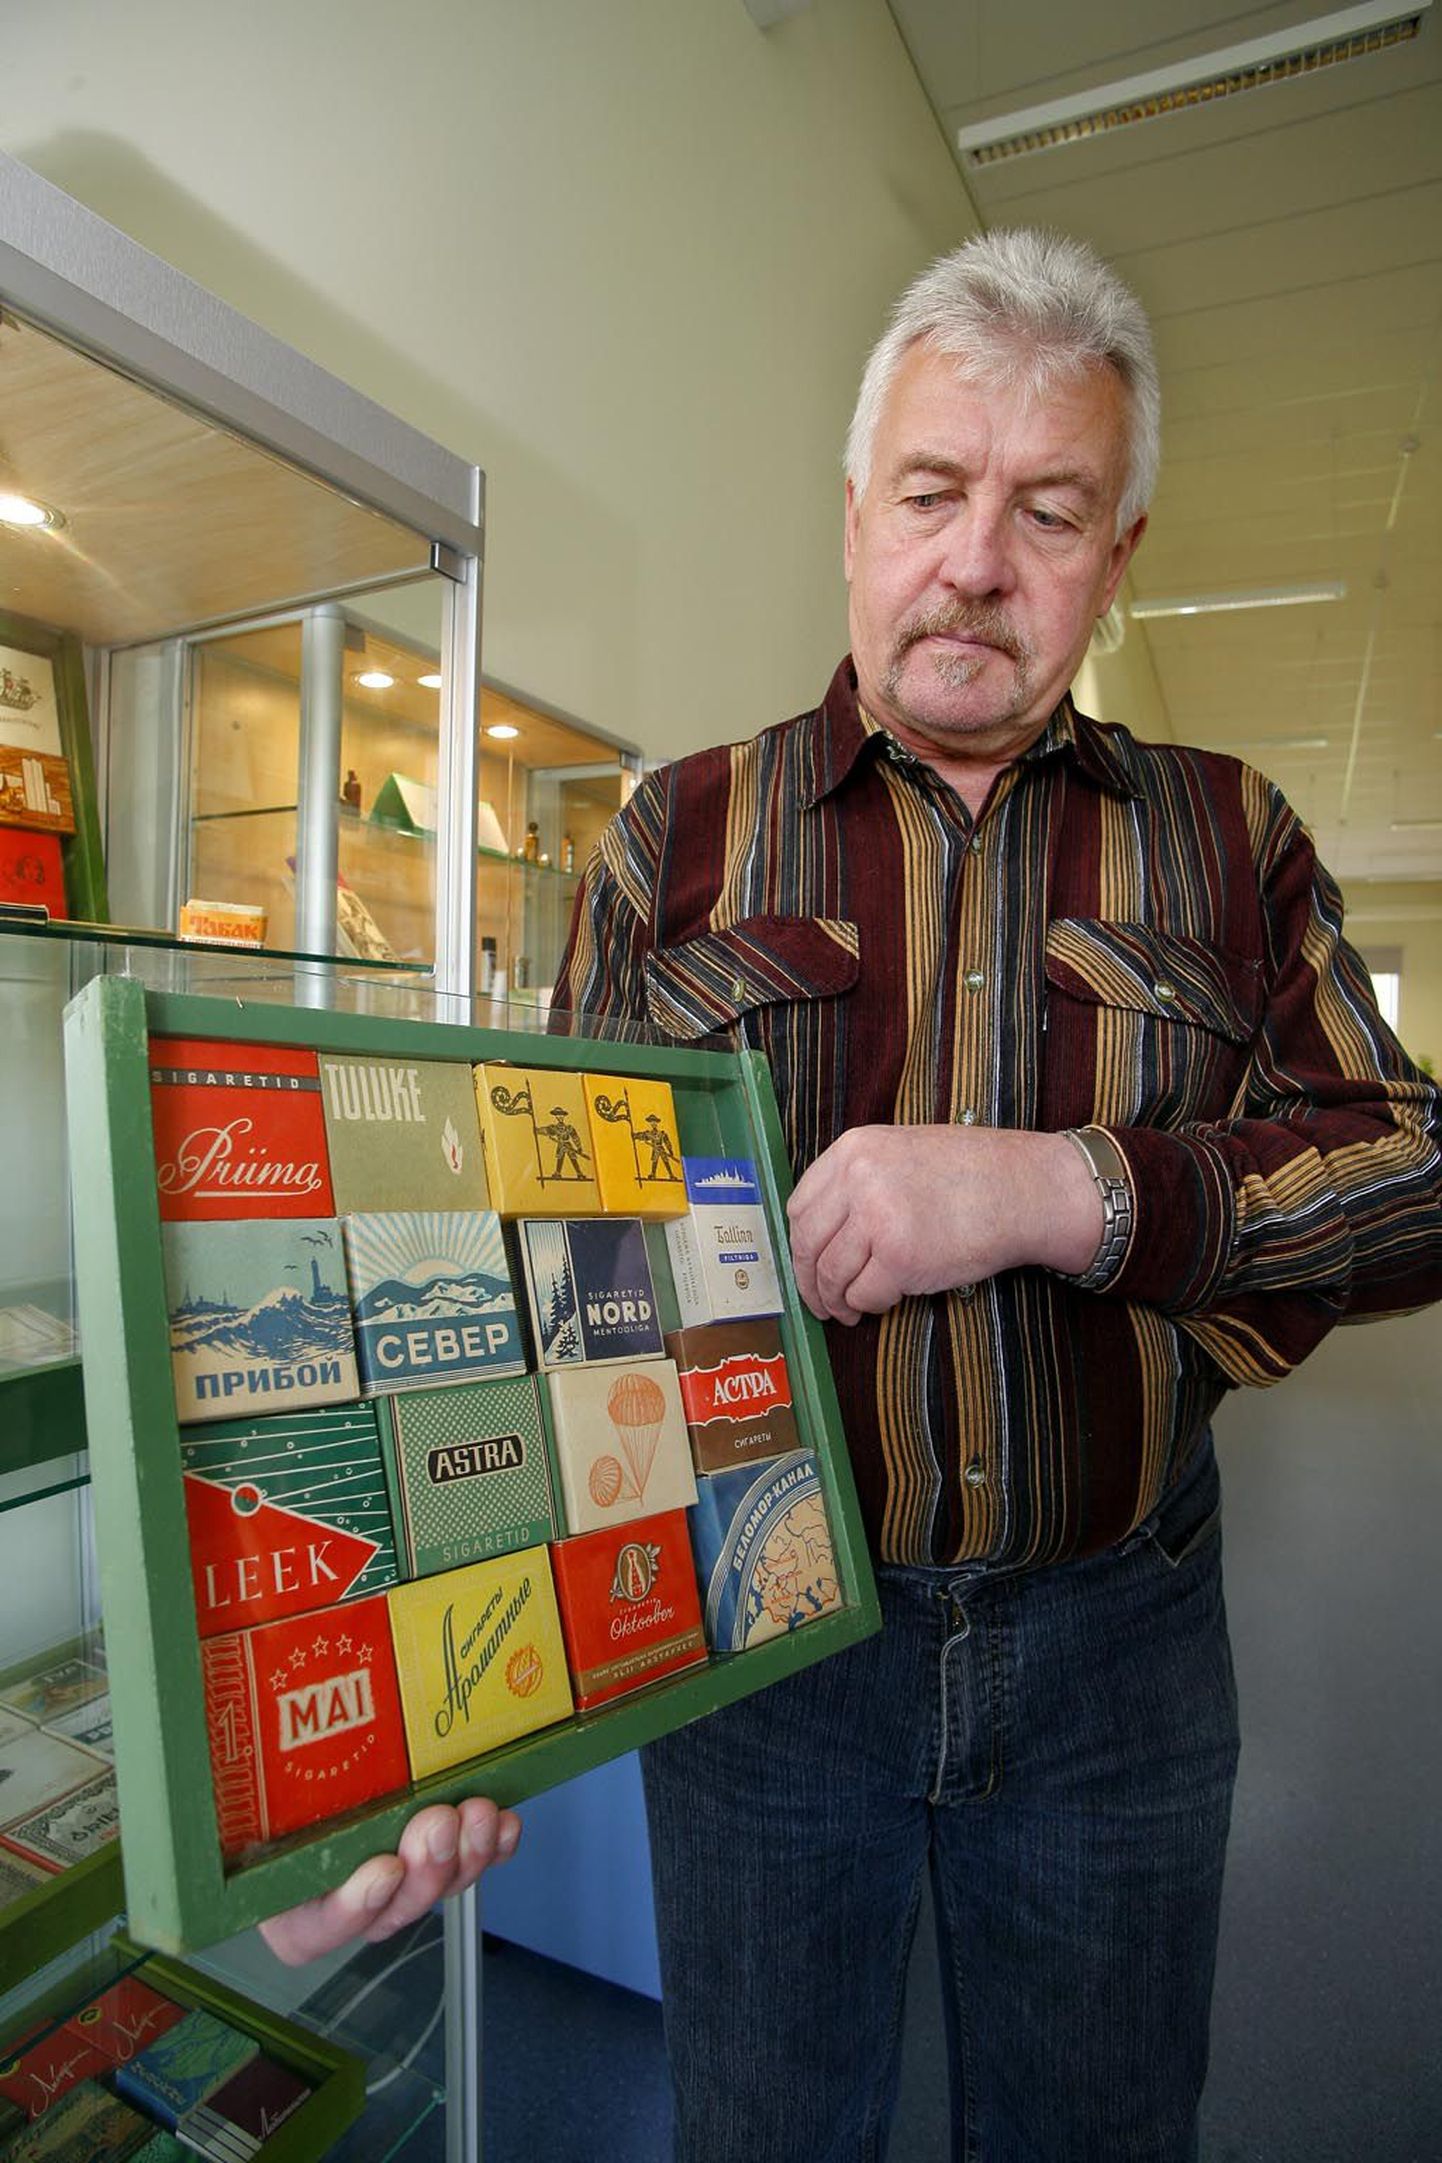 Vändra kollektsionäär Toomas Erm näitab valikut oma suitsupakkide kogust.